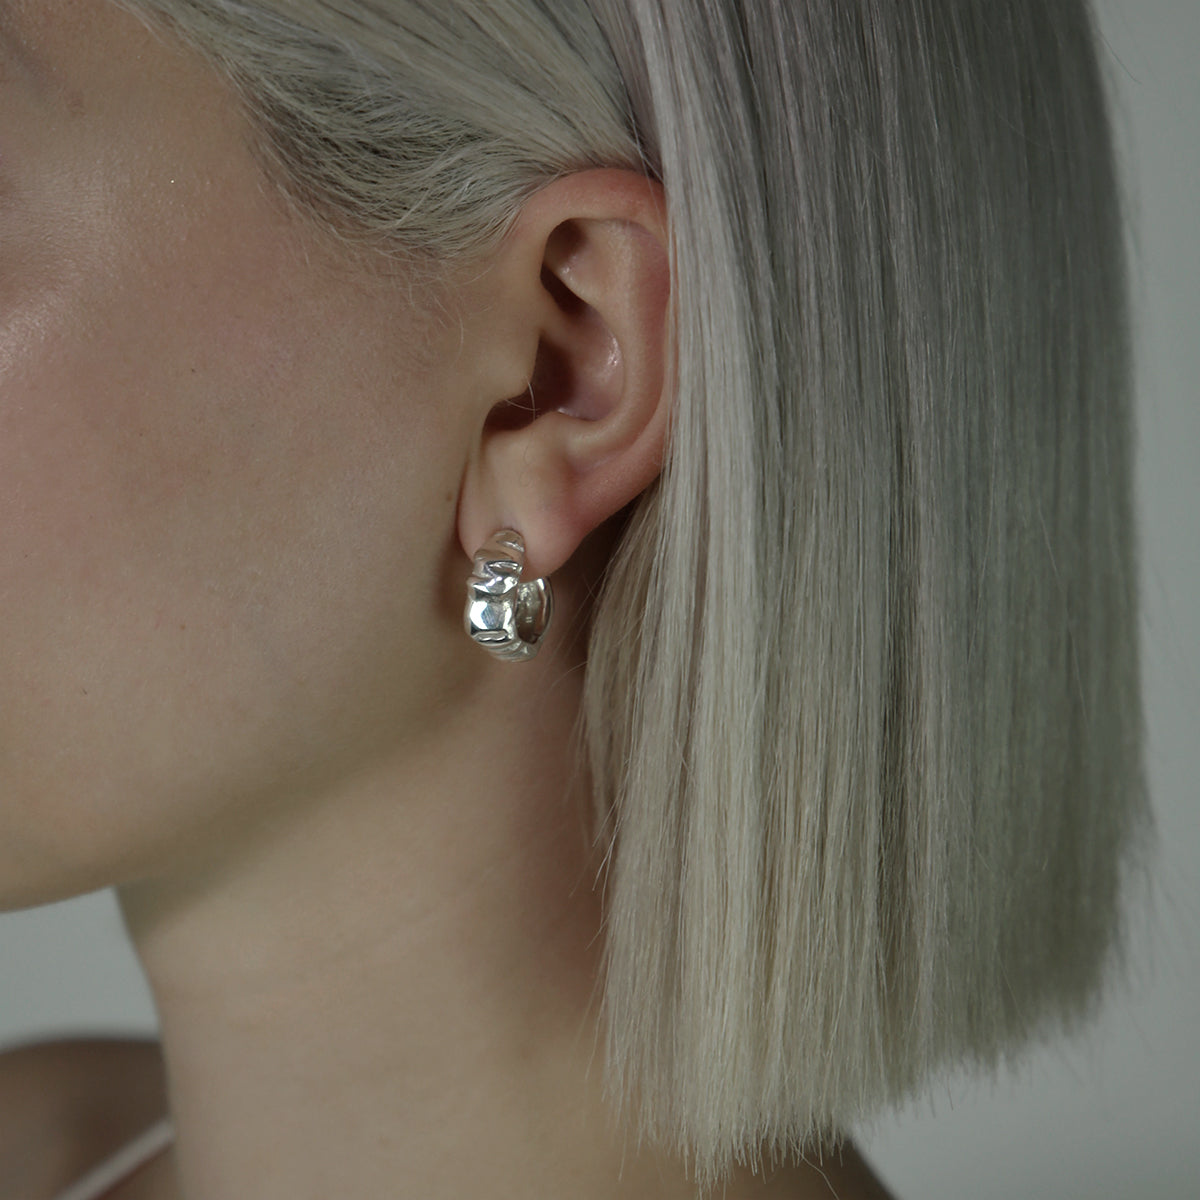 Handmade earrings made of silver 925